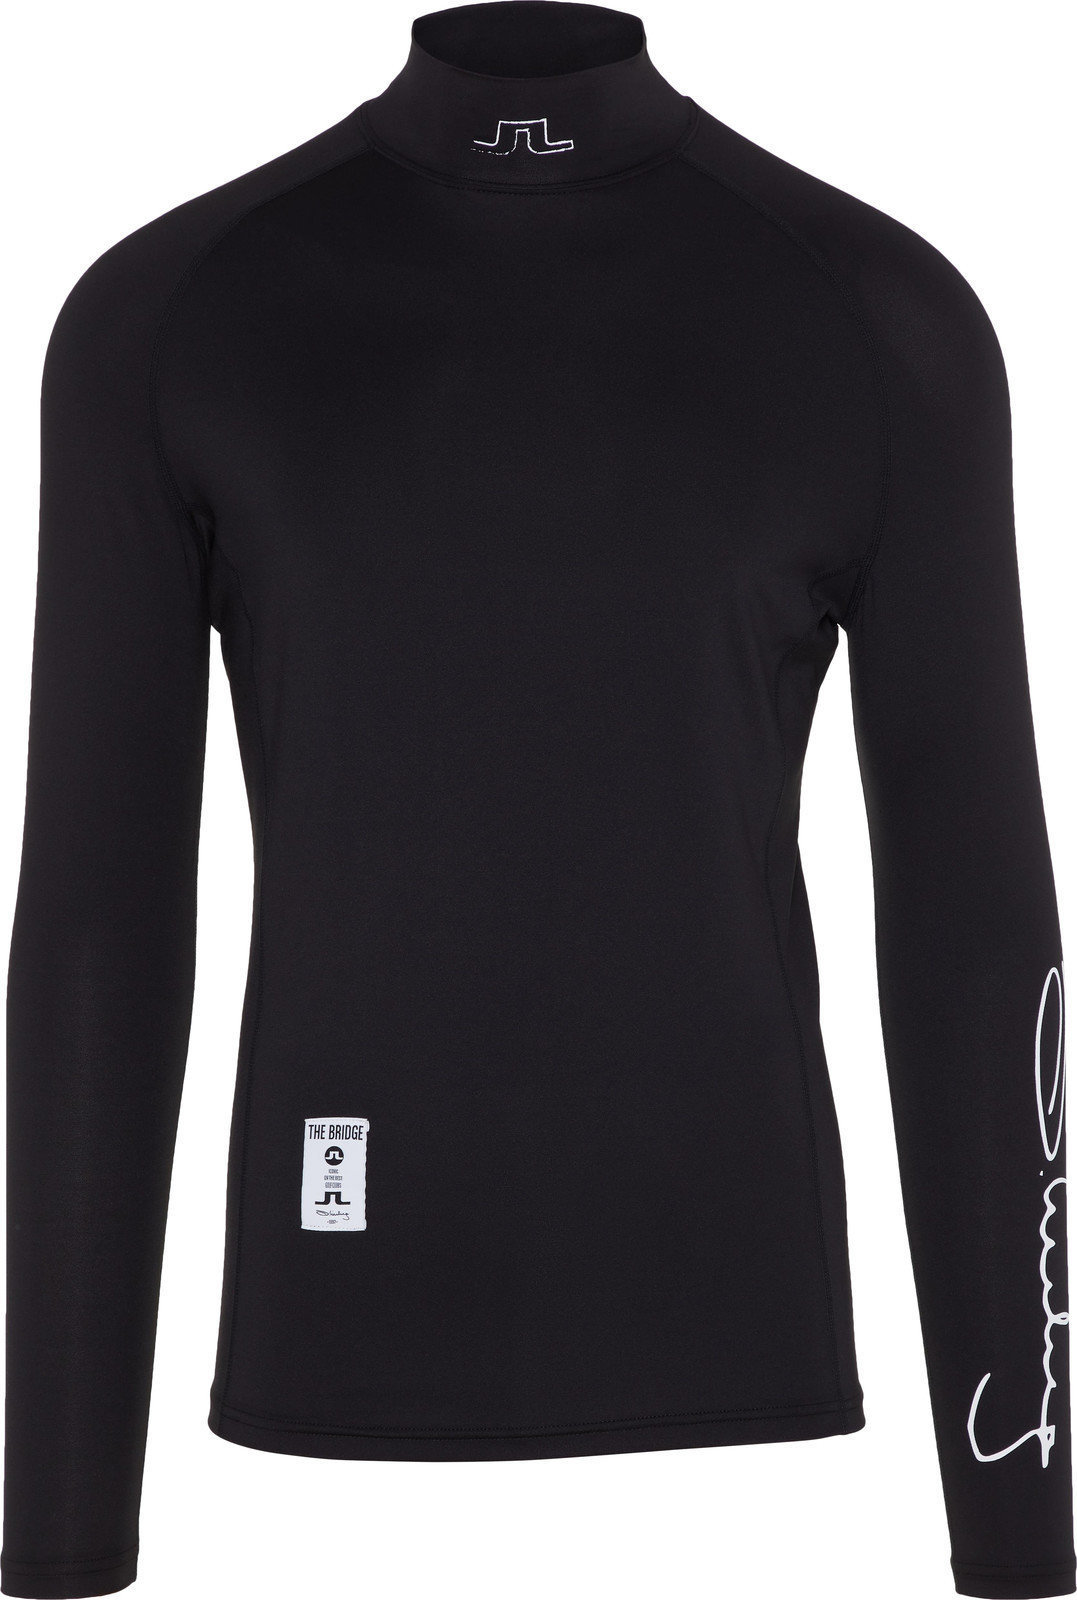 Thermal Clothing J.Lindeberg EL Soft Compression Mens Base Layer Black XL